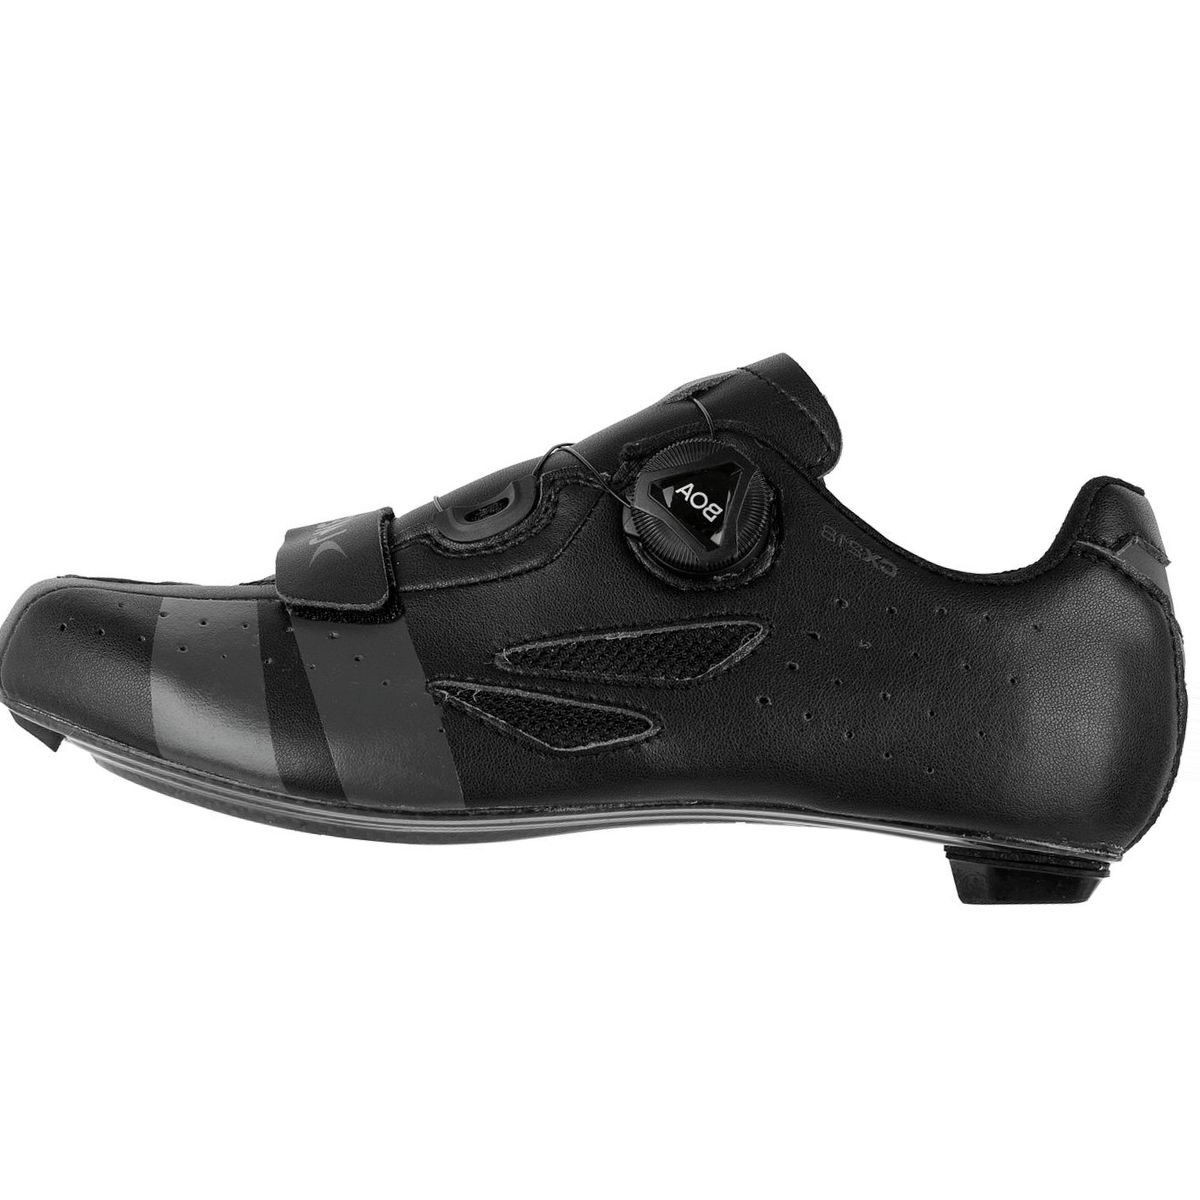 Lake CX218 Cycling Shoe - Men's